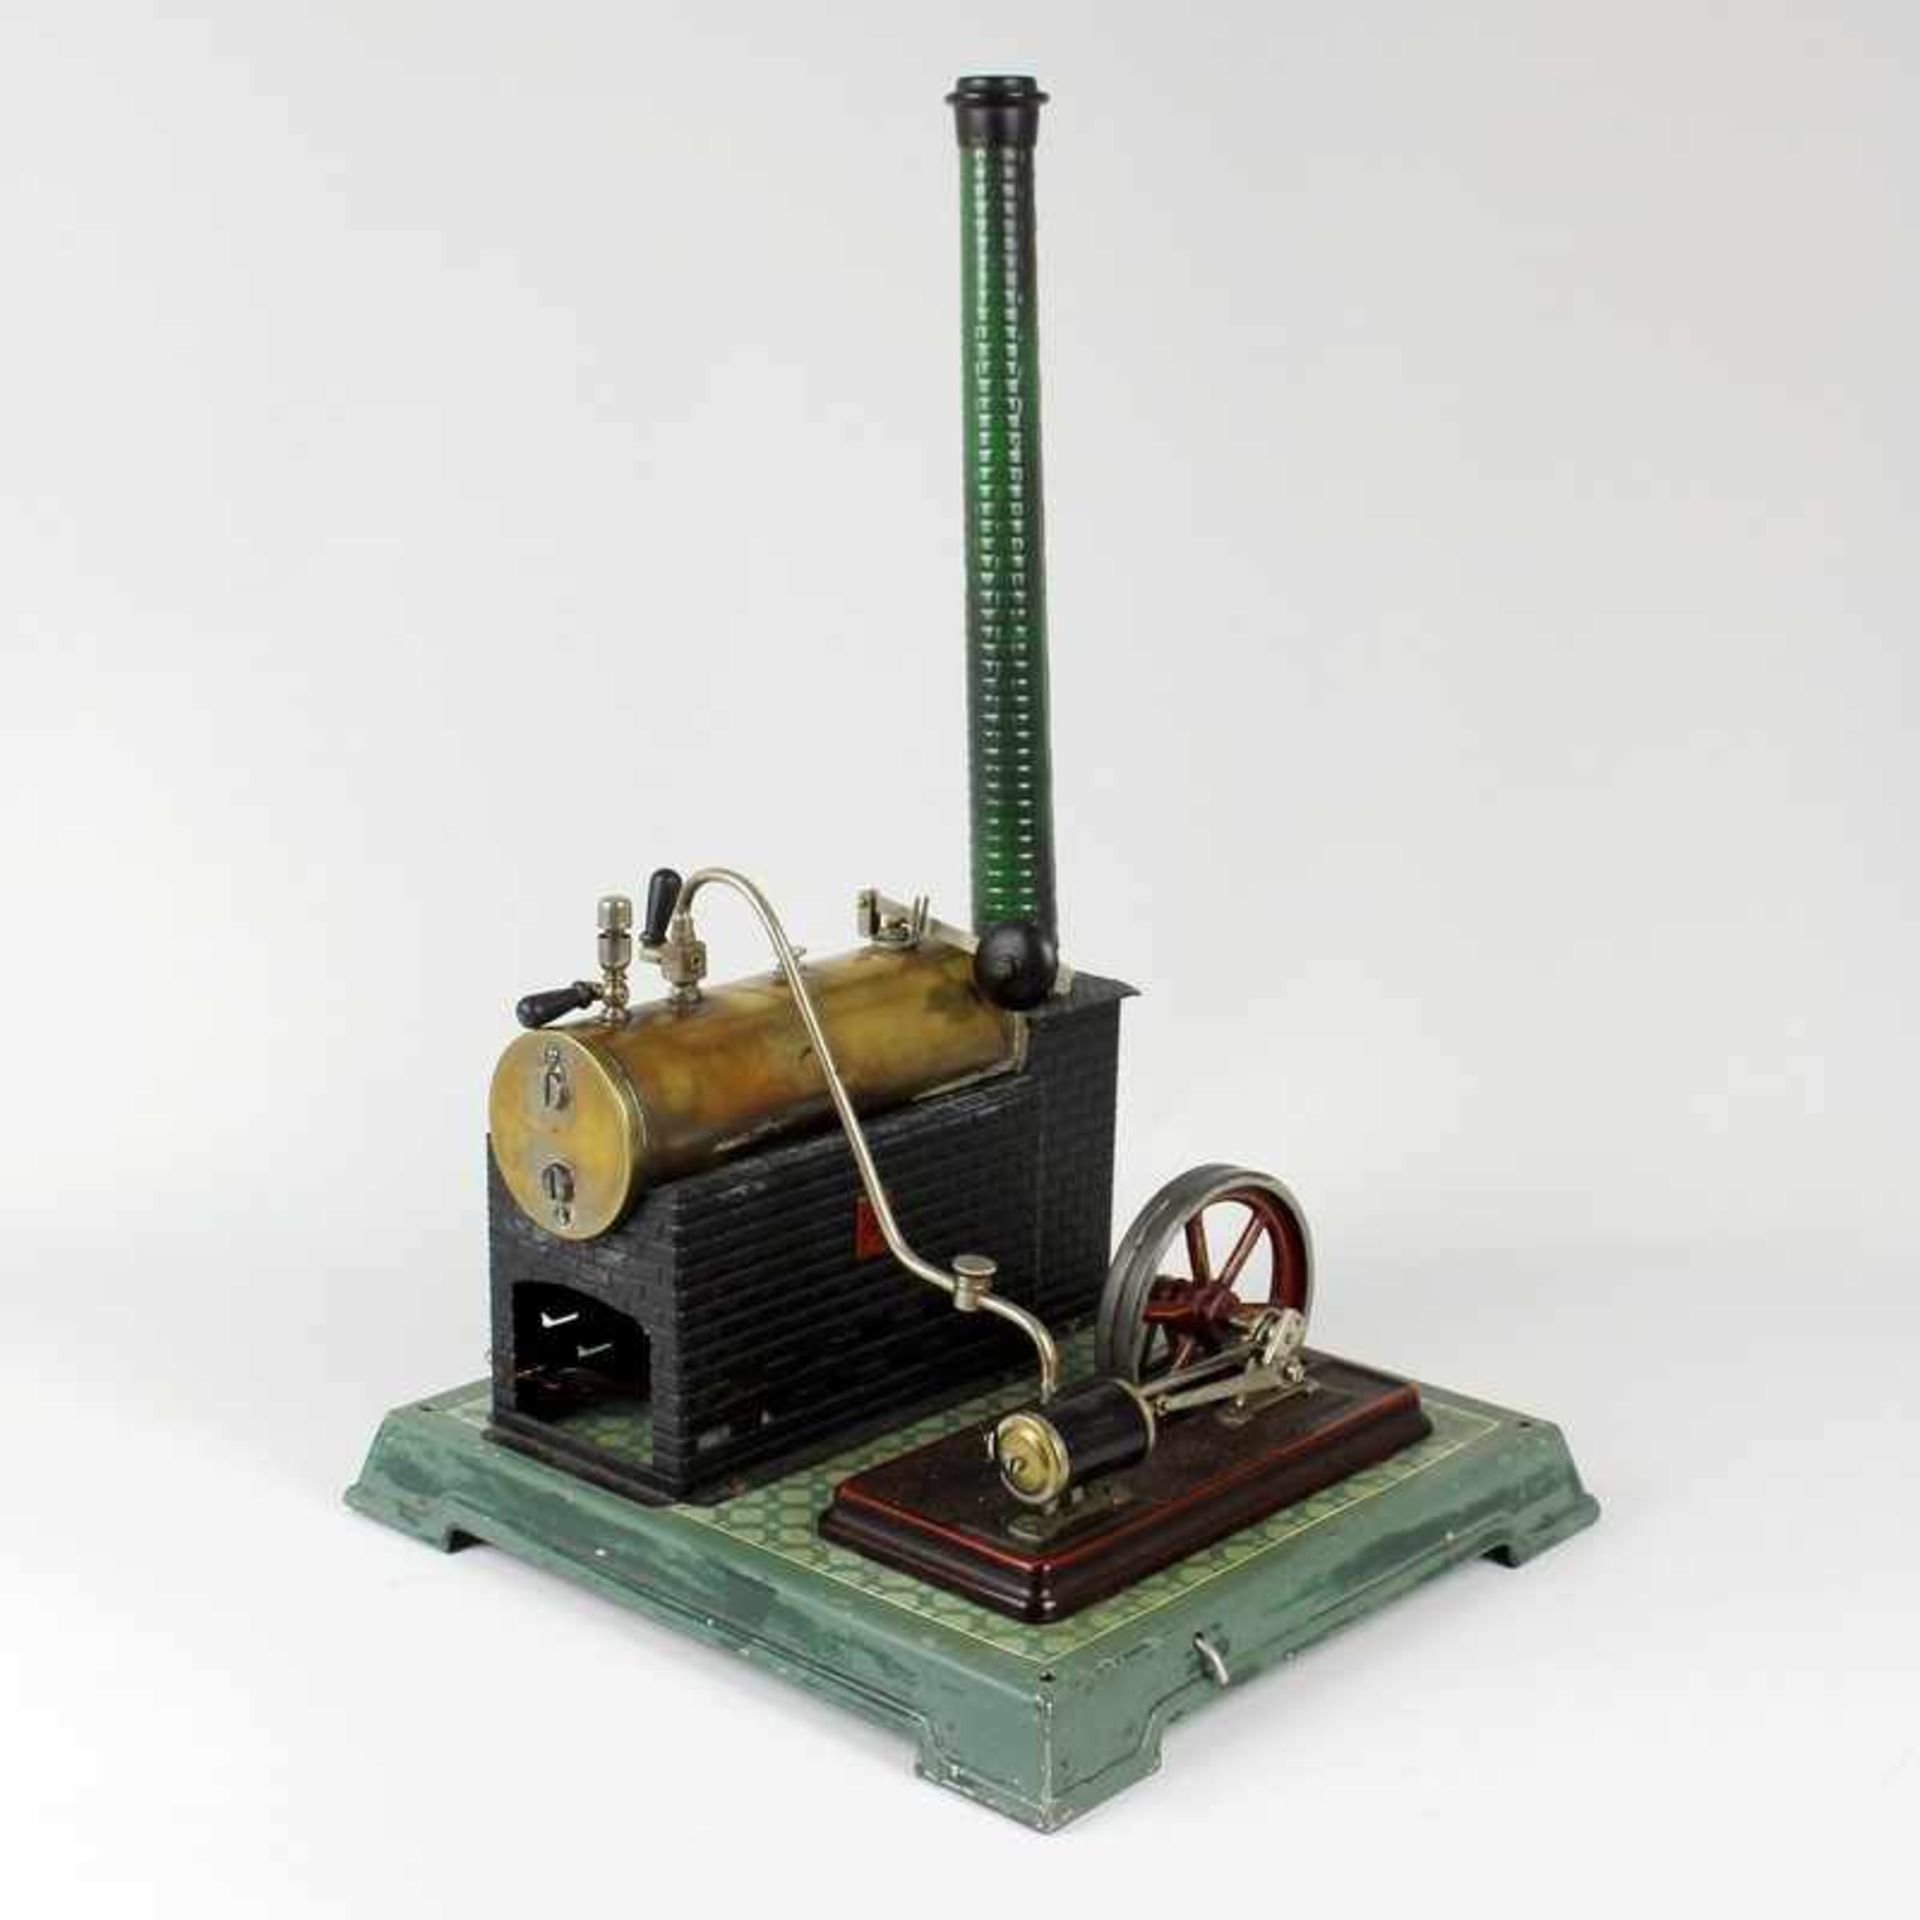 Bing - Dampfmaschine liegender Kessel, gem. BW, um 1930, Maschinensockel u. Schlot mit Mauerprägung,